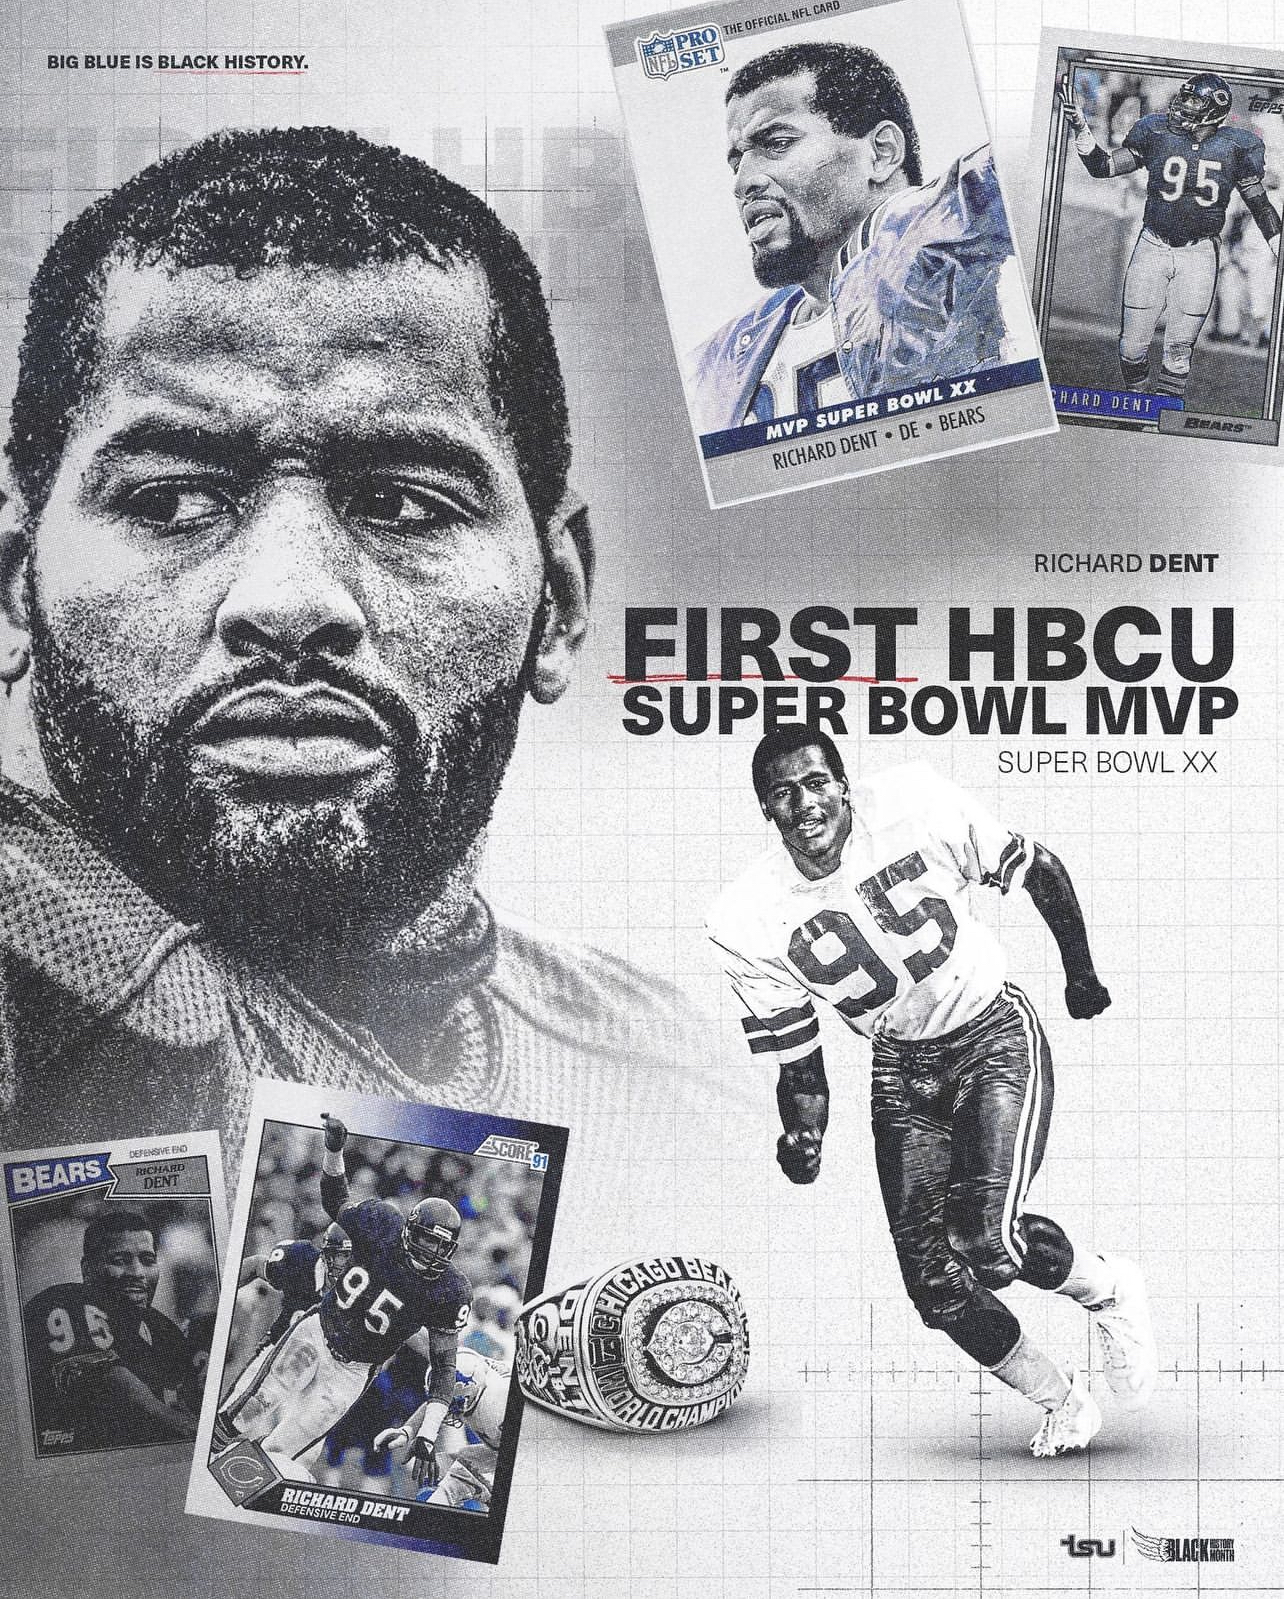 The First HBCU Alum Super Bowl MVP